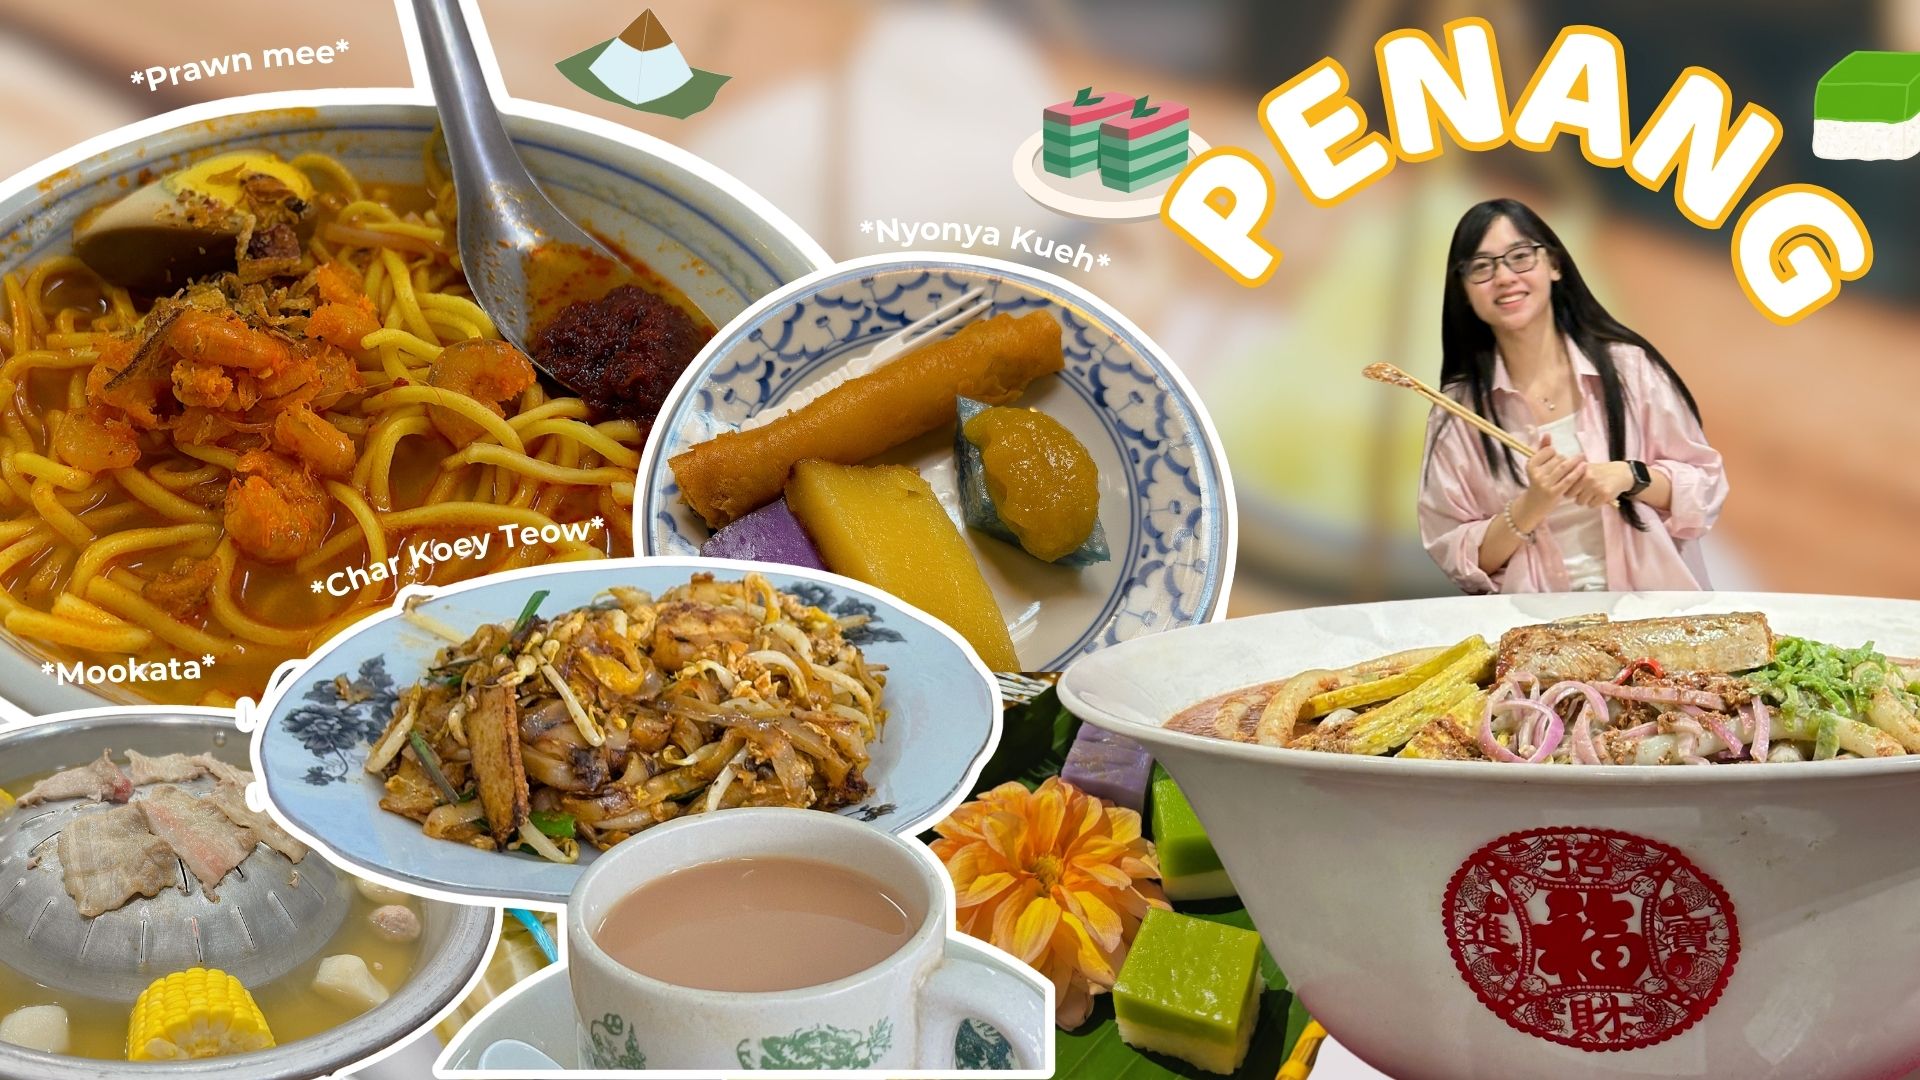 Du lịch Penang, Malaysia: Khám phá văn hoá Baba Nyonya, bảo tàng đồ ăn,...